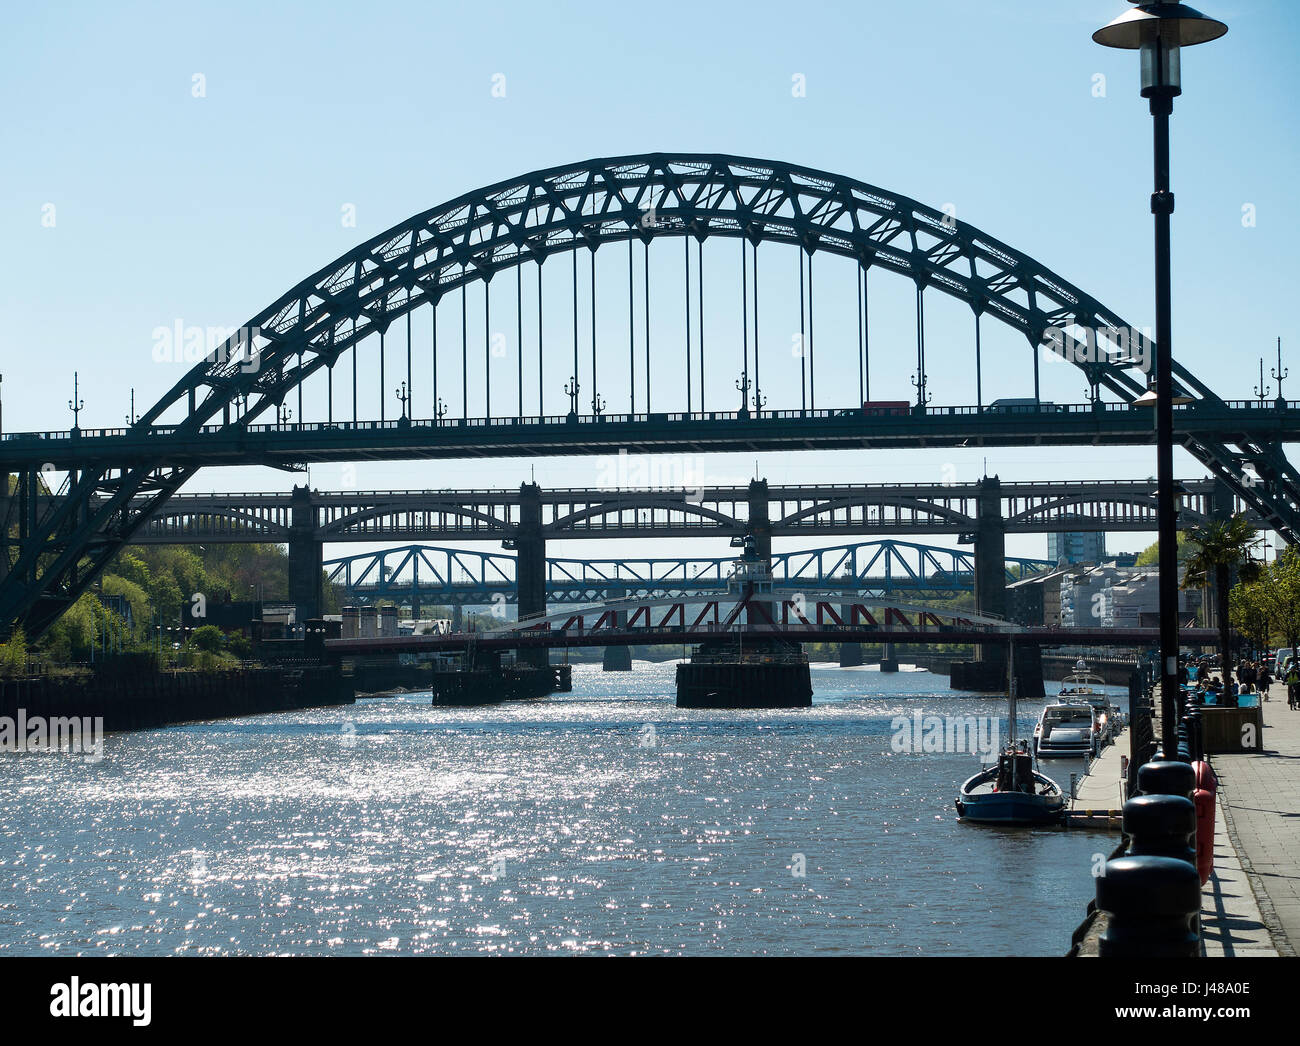 Die Newcastle upon Tyne Quayside mit Tyne, Swing und High Level Railway Bridges über den Fluss Tyne England Vereinigtes Königreich Großbritannien Stockfoto